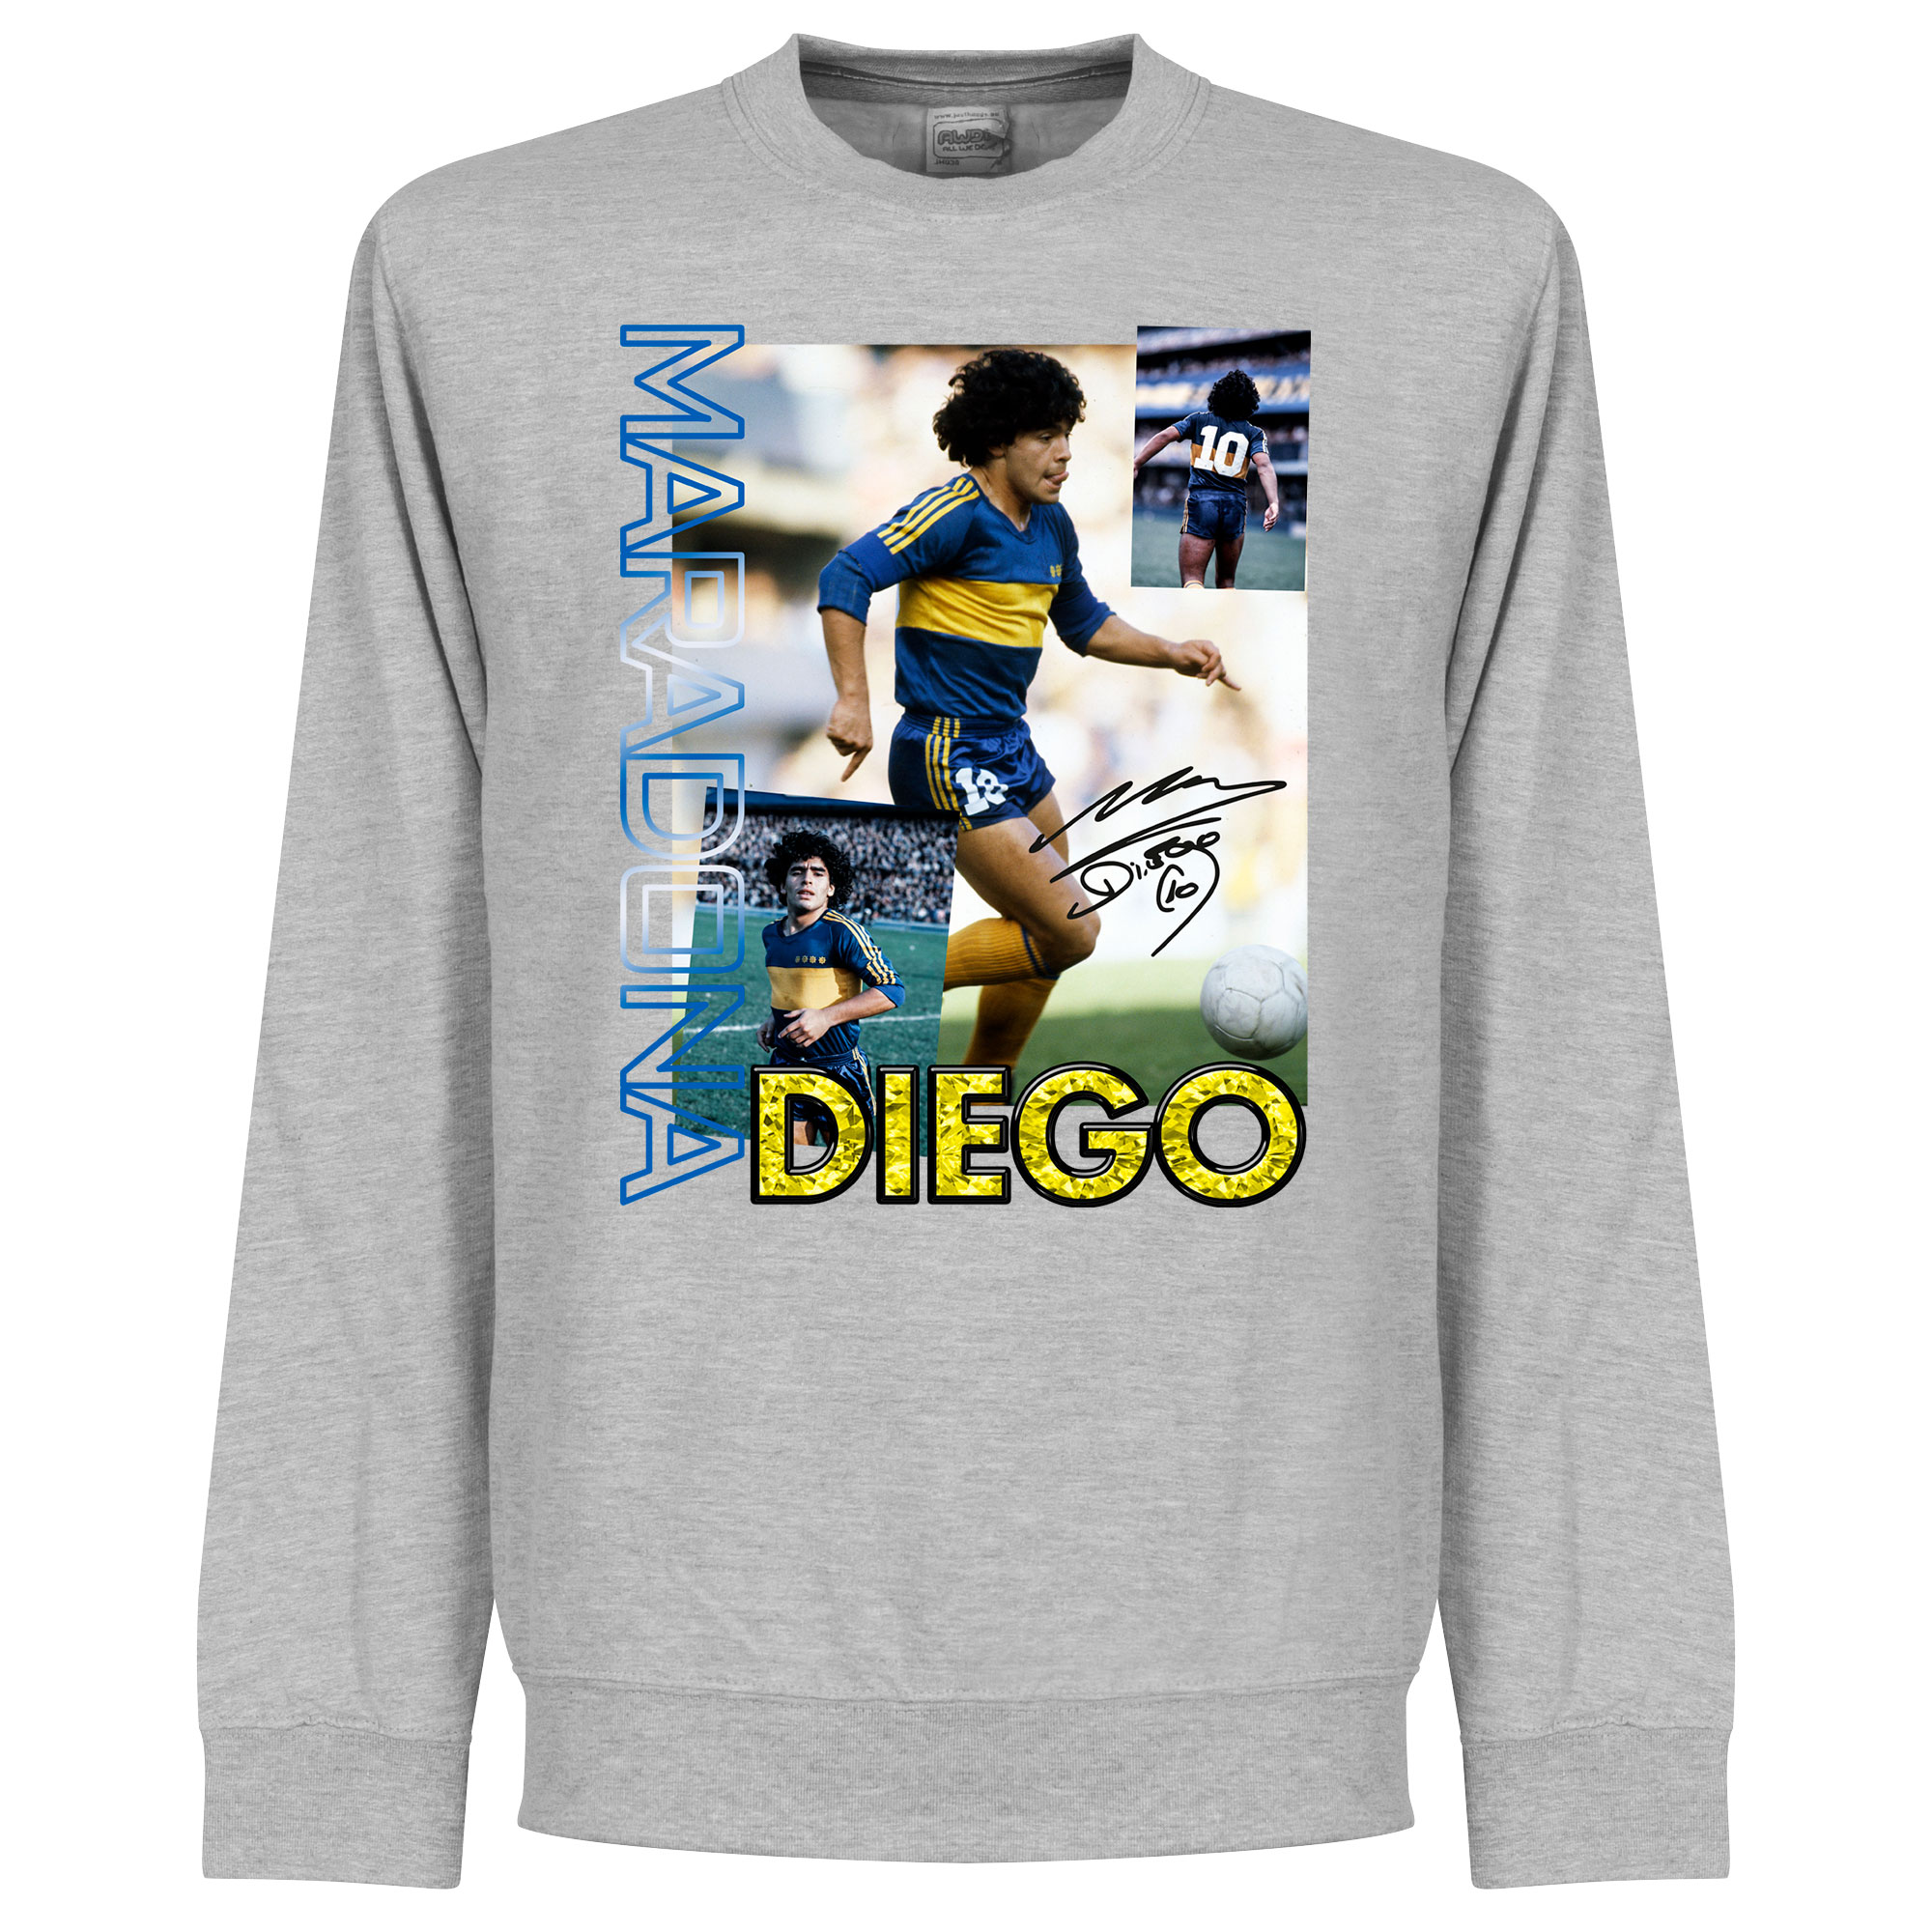 Diego Maradona Boca Old Skool Sweater - Grijs - Kinderen - 4 Years